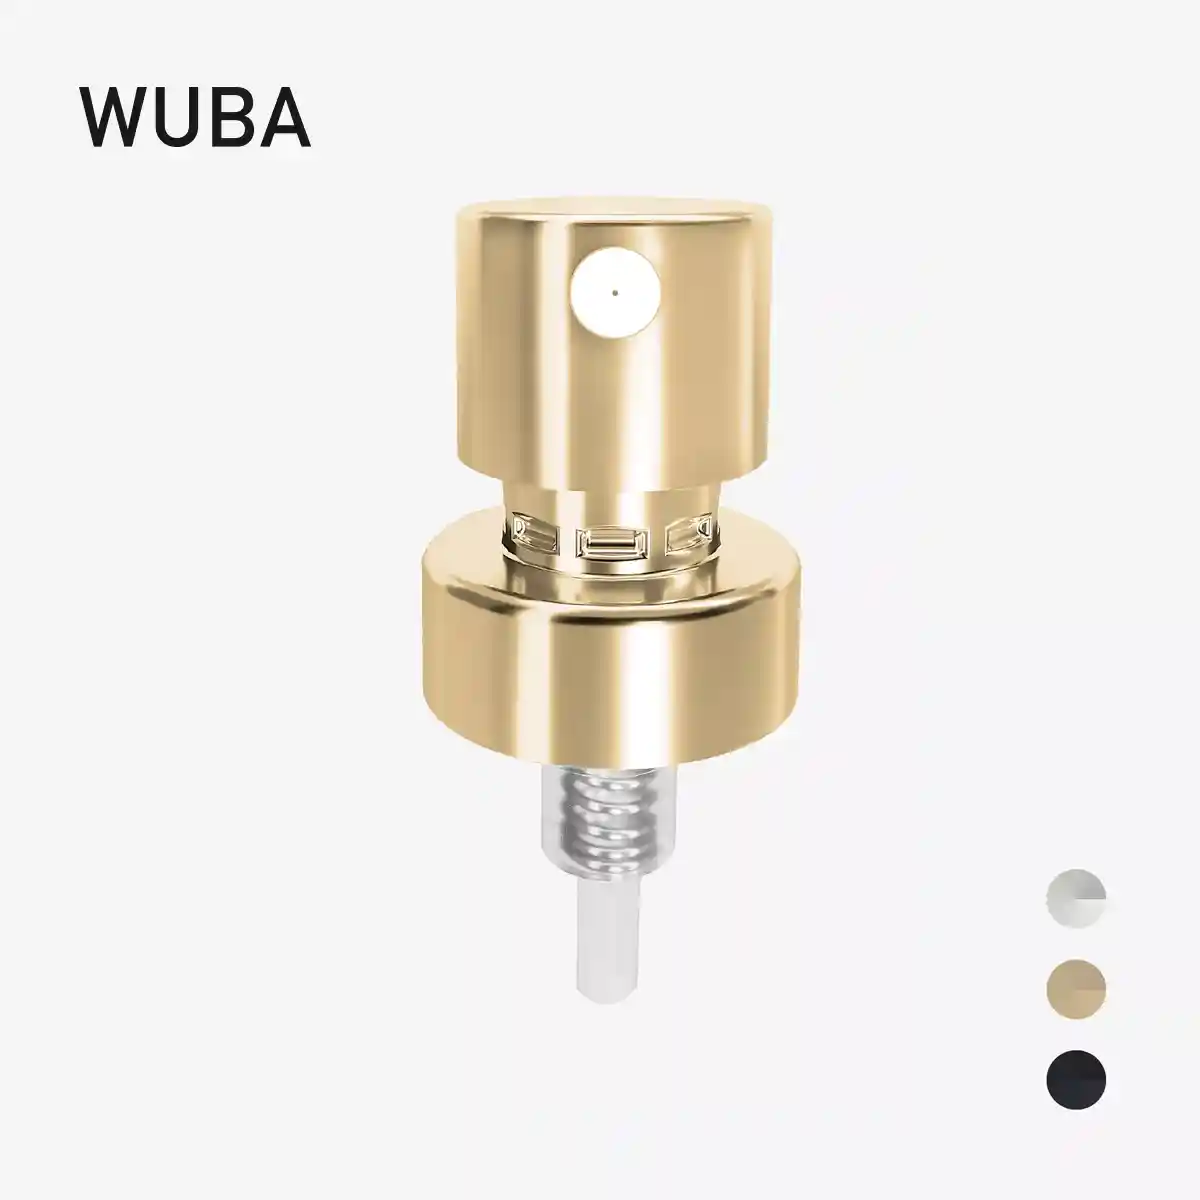 WUBA 108 Series - K163-A4-IW01-V2